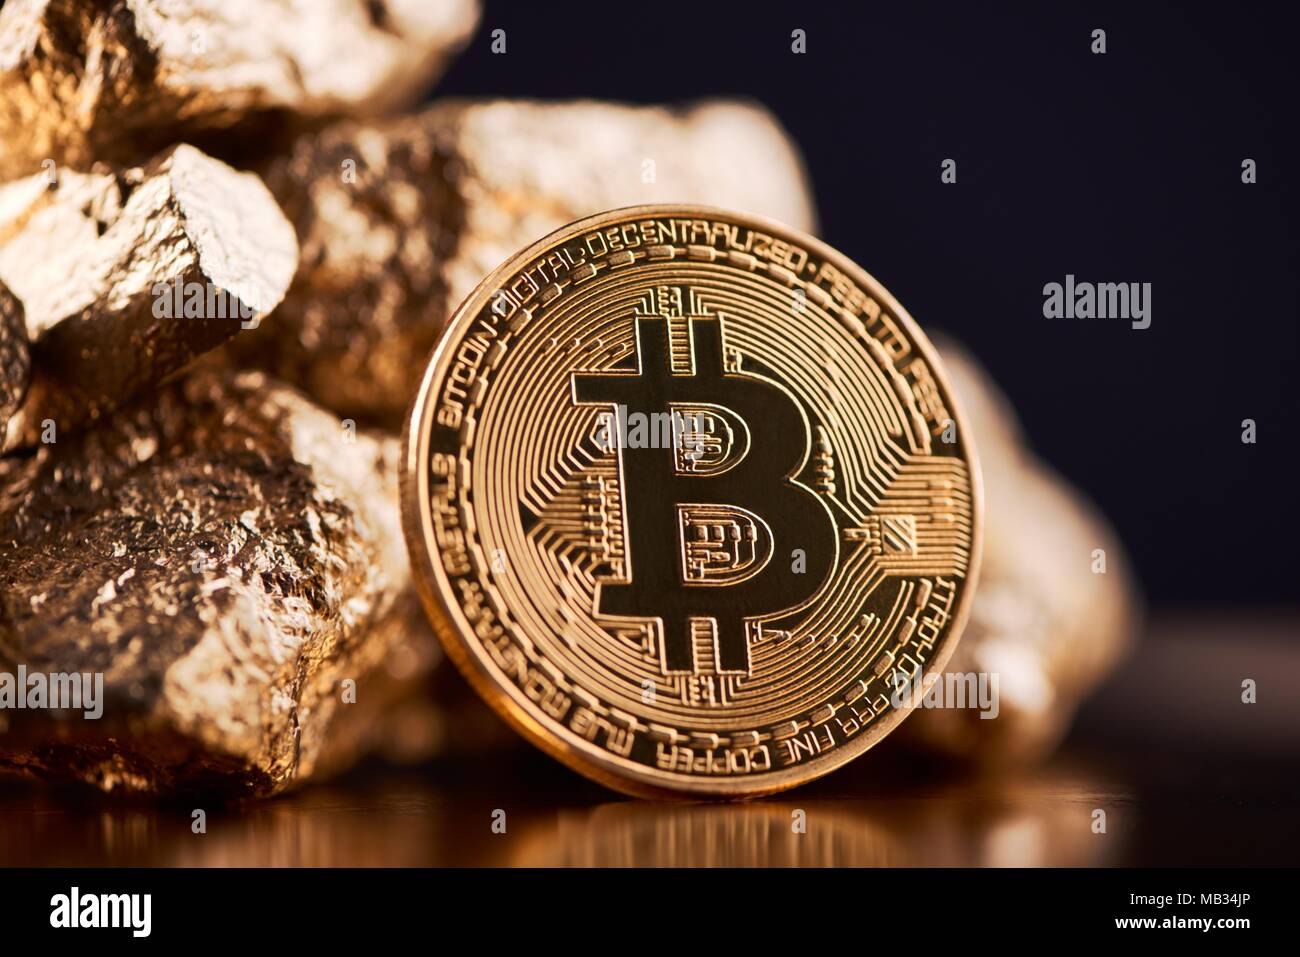 Bitcoin or à côté de morceaux d'or représentant les deux tendances monde futuriste isolé sur fond noir. Monnaie virtuelle numérique blockchain l'exploitation minière de l'argent électronique exchange innovation business Banque D'Images